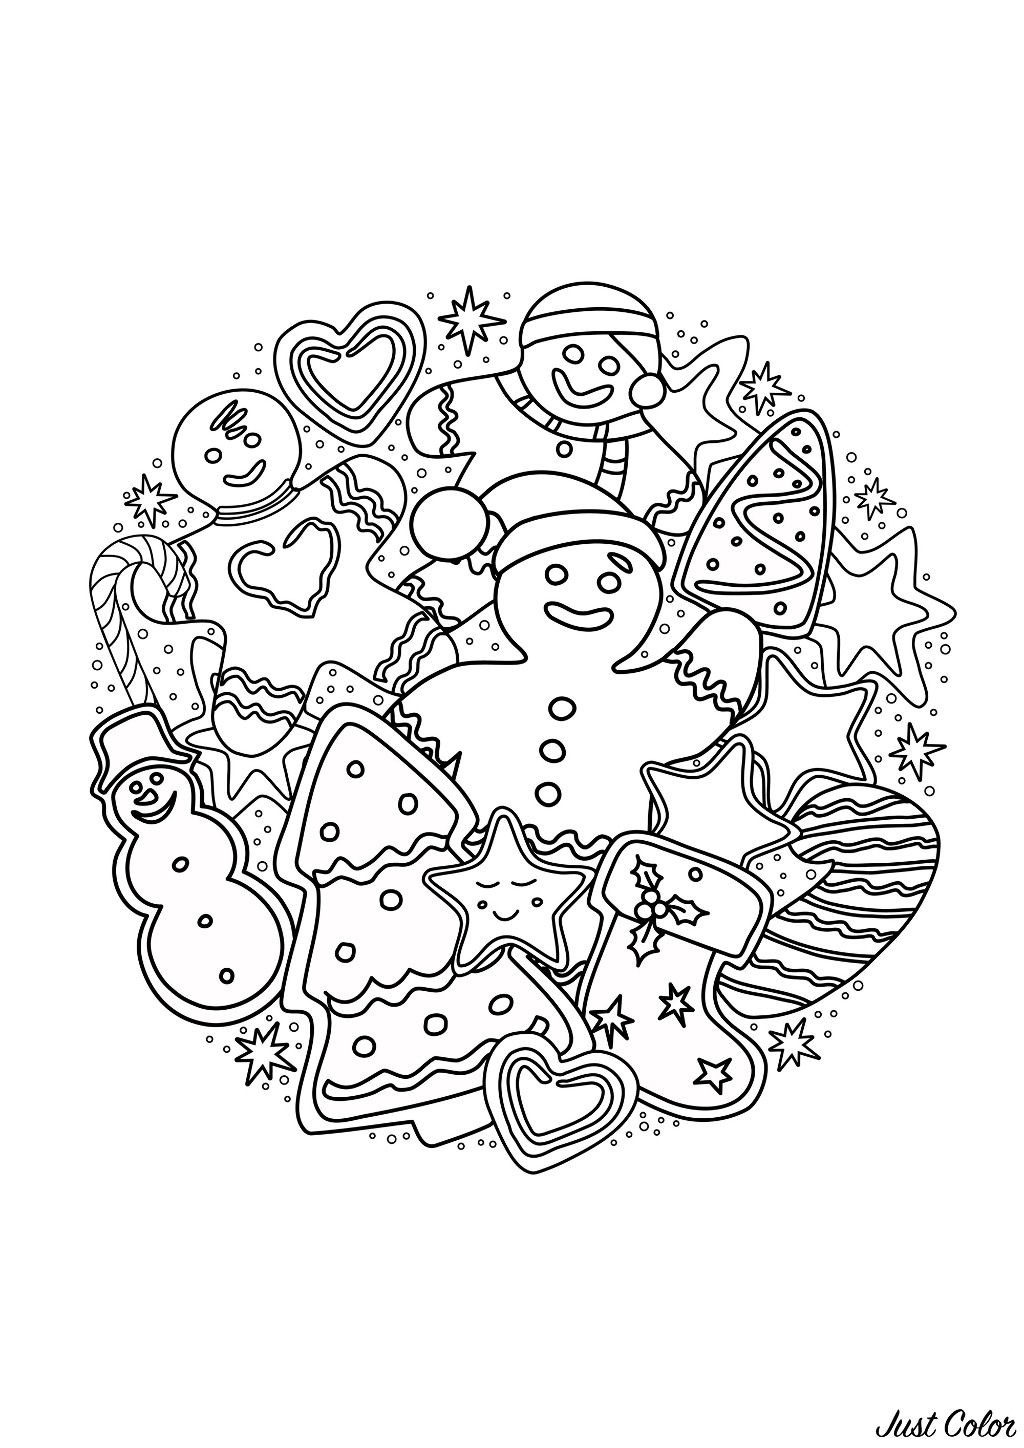 Lebkuchenmänner und Kuchen, die Weihnachtsbäume, Schneemänner, Leckereien und Süßigkeiten darstellen ...